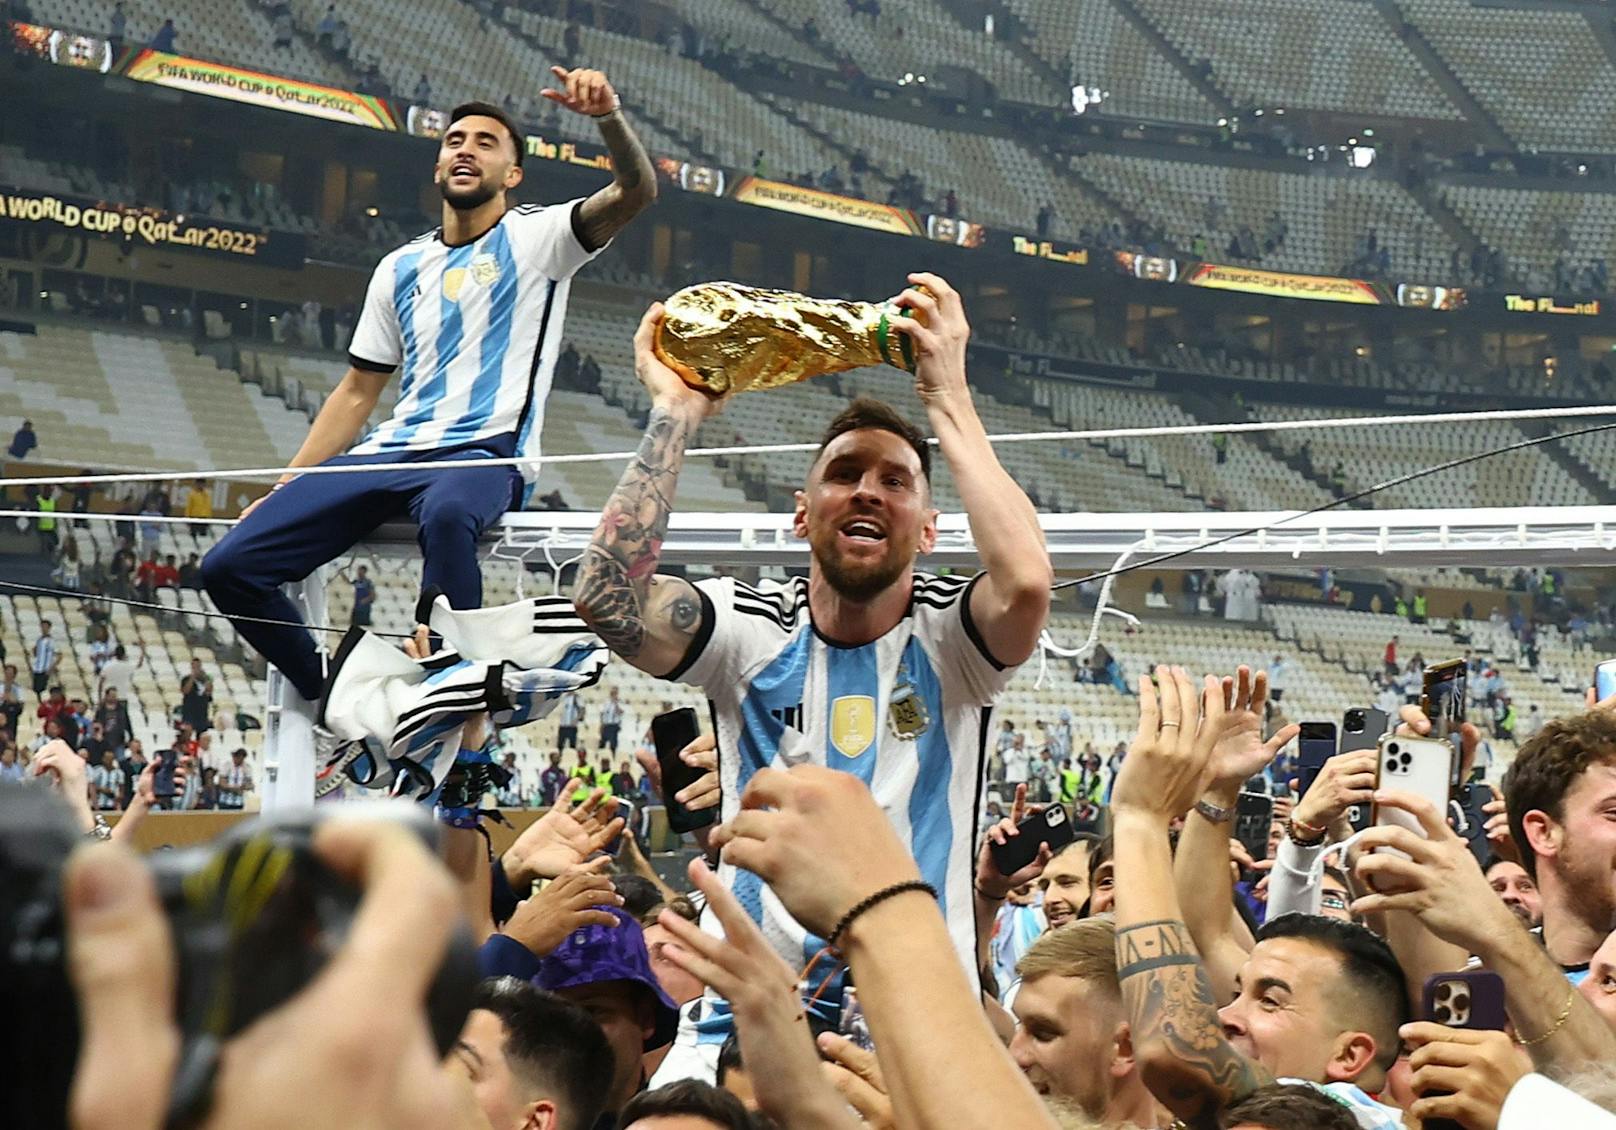 So verneigt sich die gesamte Sportwelt vor Messi